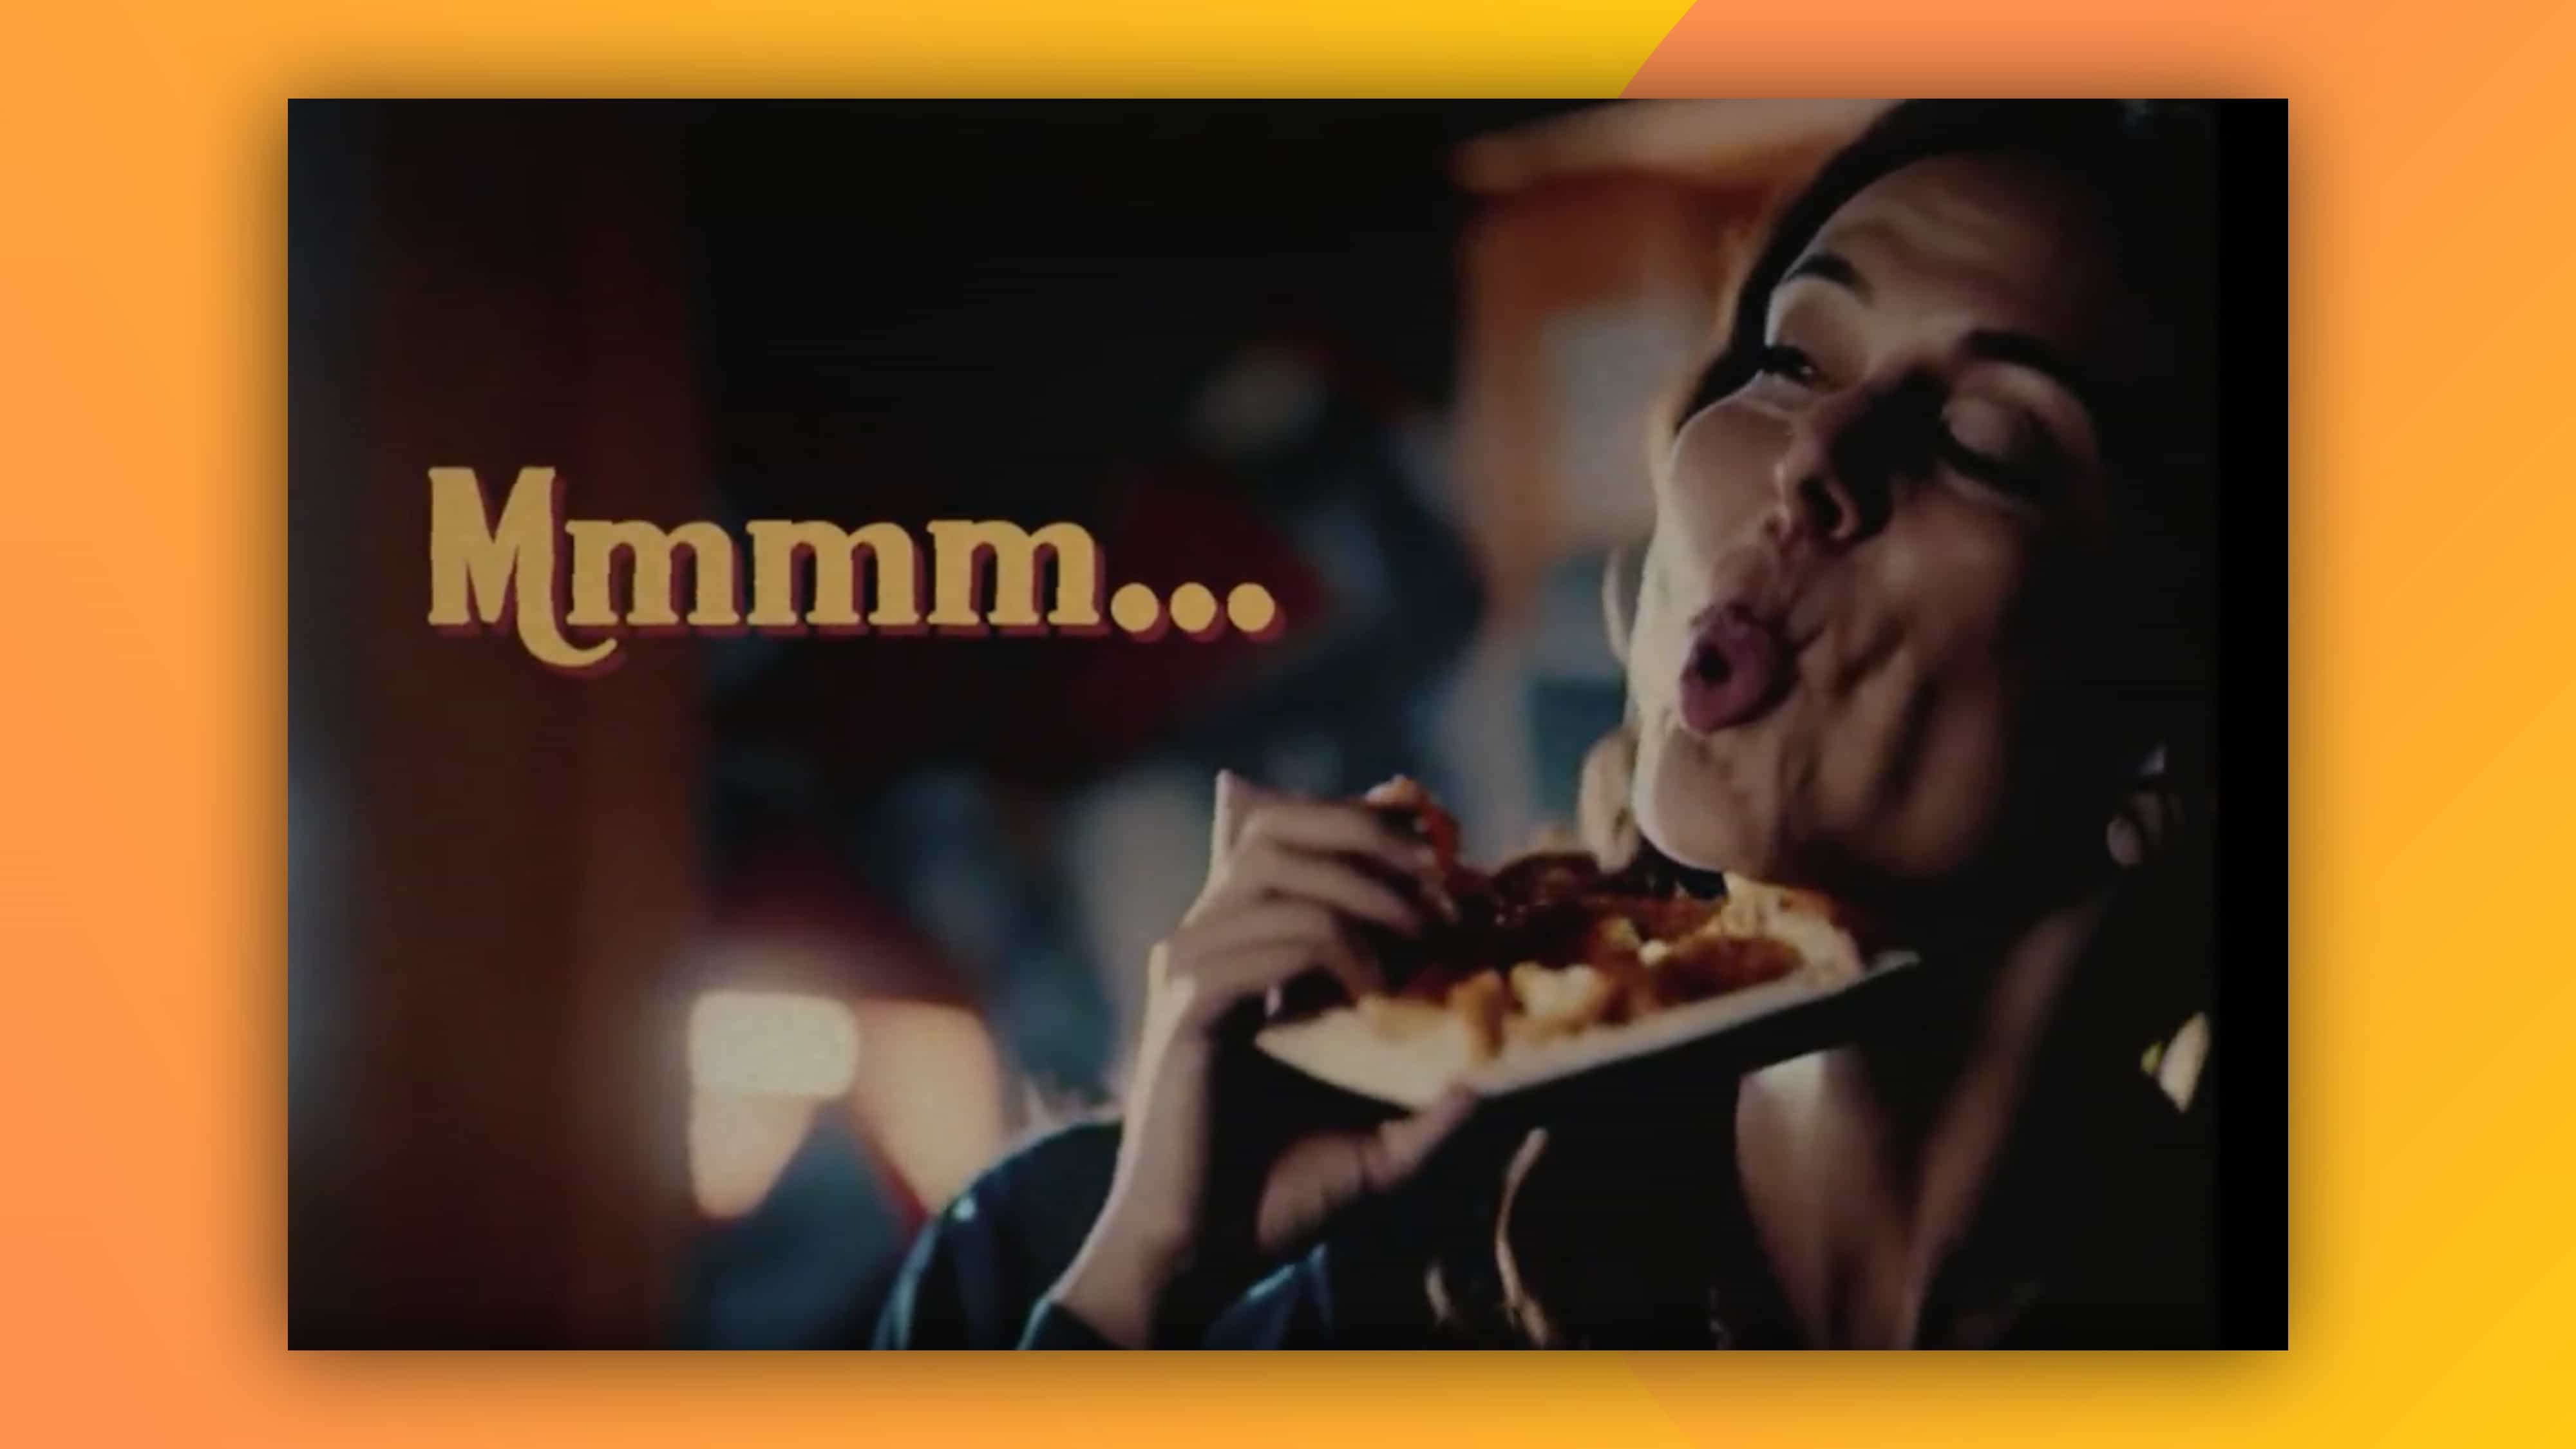 Este anuncio de pizza generado por IA es realmente increíble